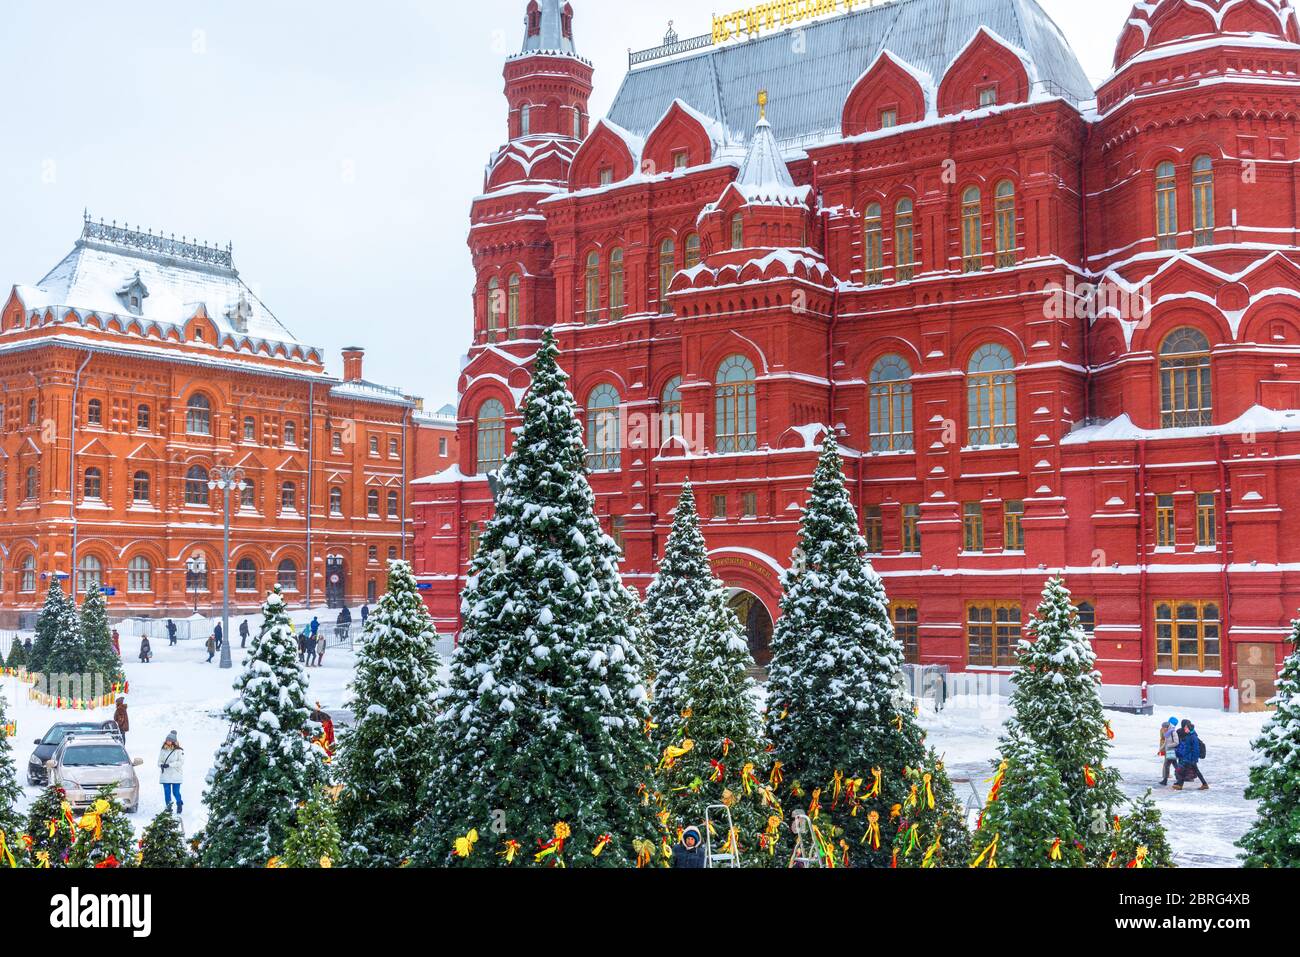 Moscou, Russie - 5 février 2018 : centre de Moscou enneigé en hiver. Arbres de Noël surplombant le musée historique de l'État pendant la neige. Ancienne belle archiite Banque D'Images